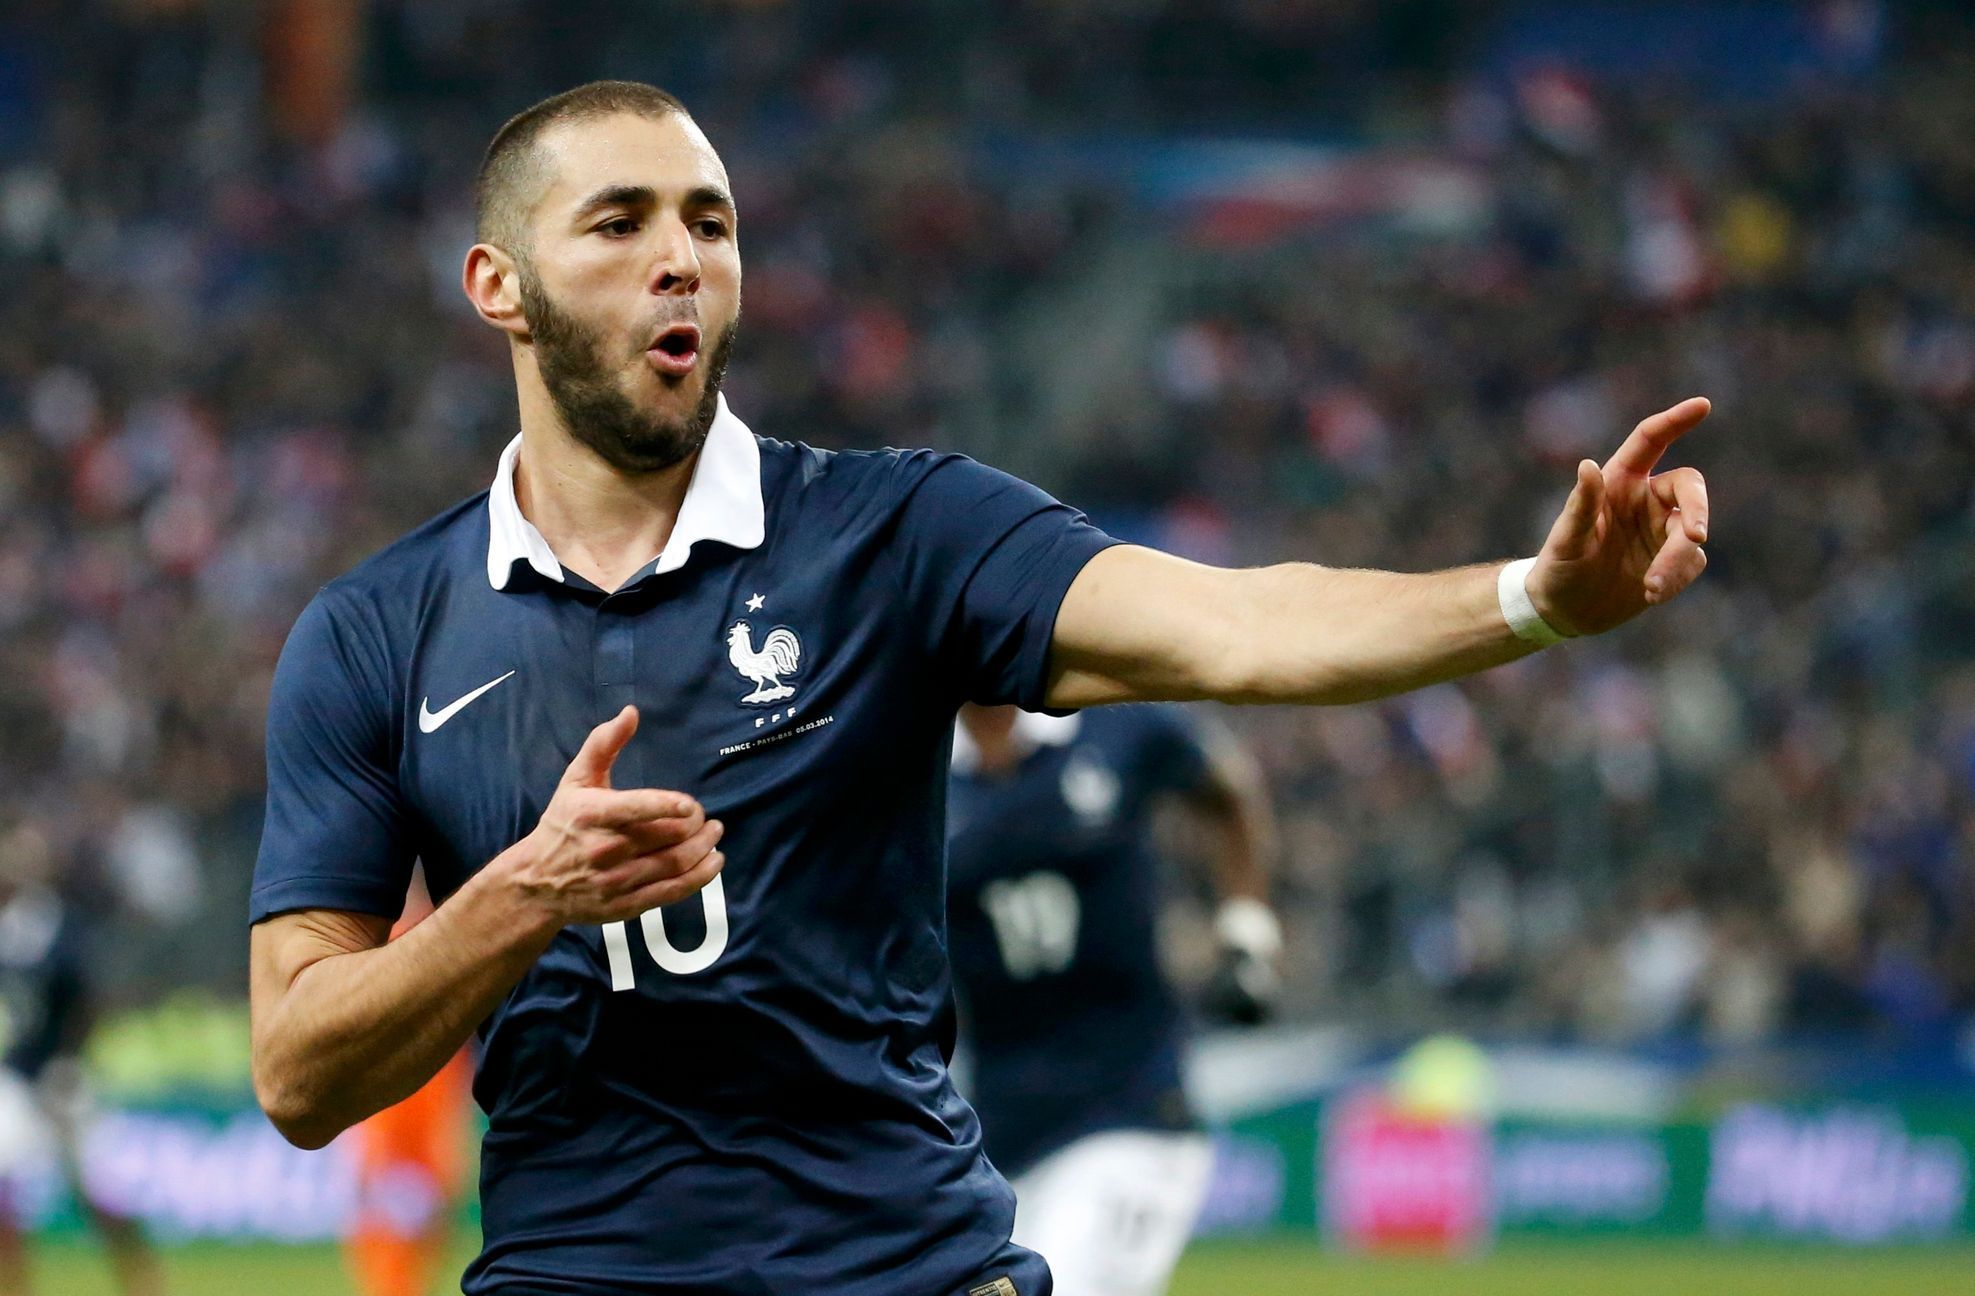 Francie - Nizozemsko: Karim Benzema slaví gól